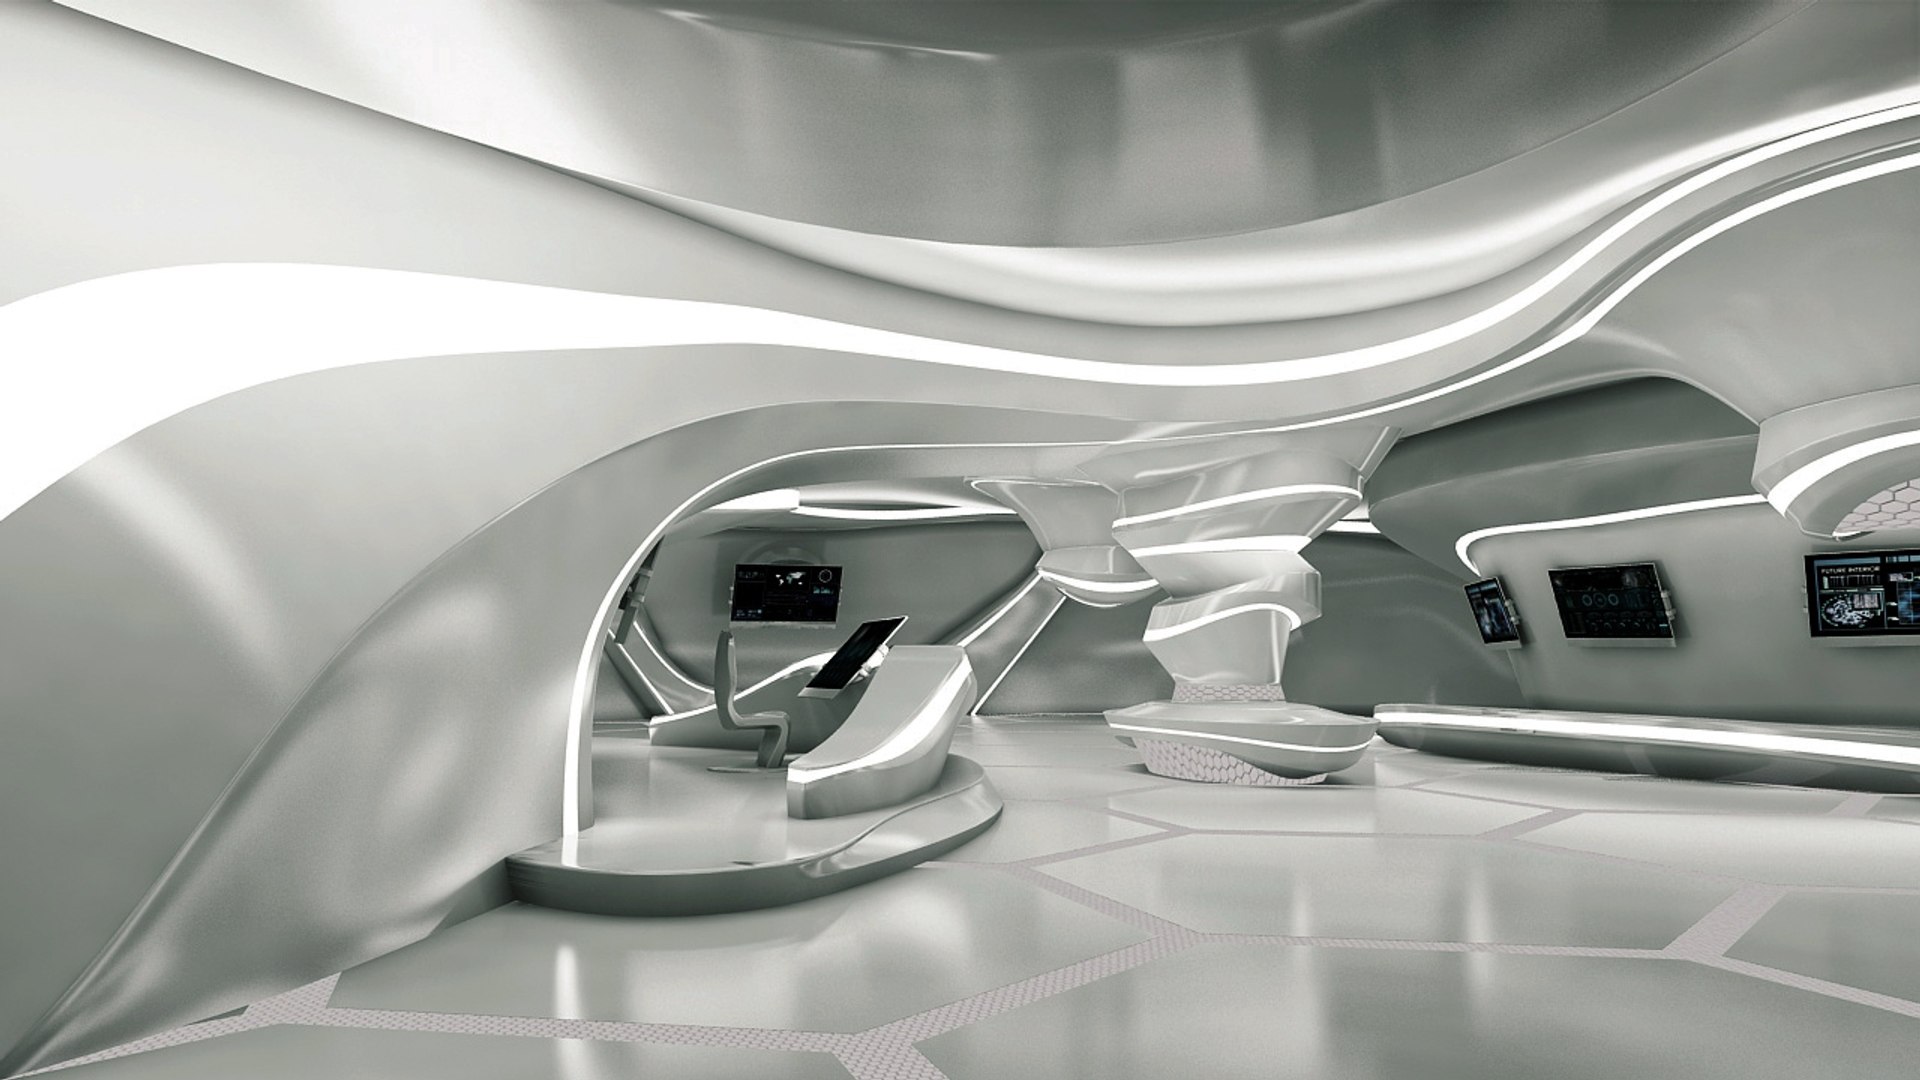 Sci-fi futuristic room design 3D model - TurboSquid 1390732